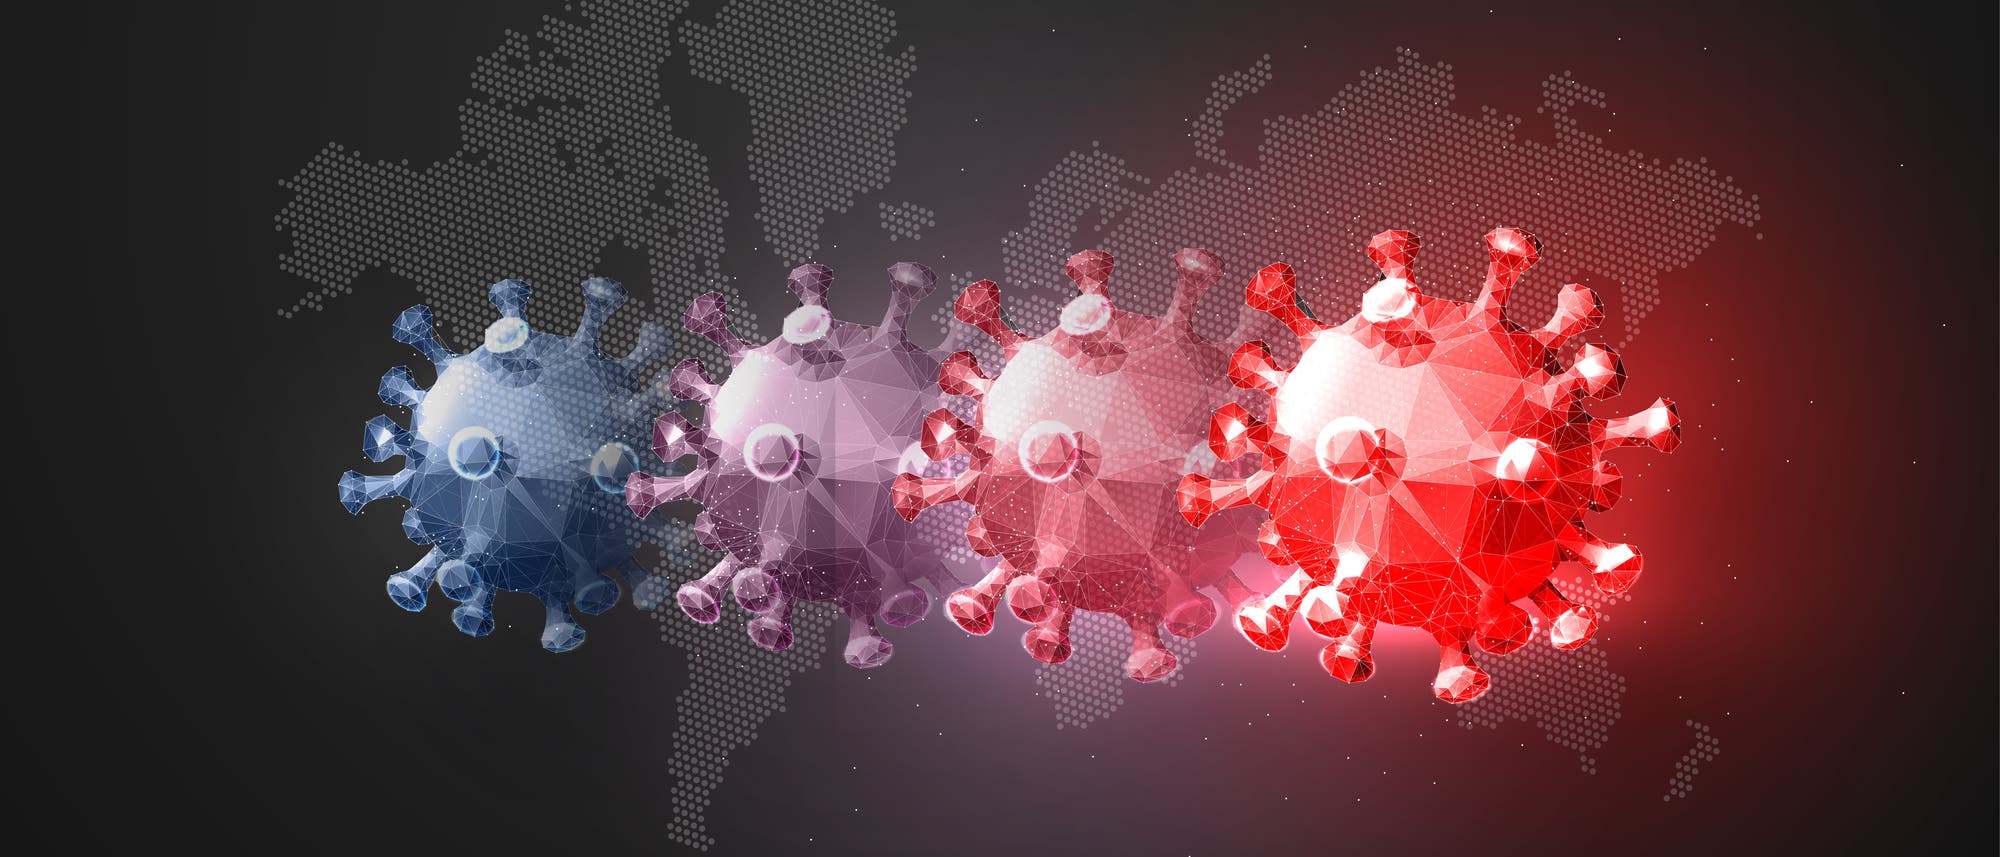 Darstellung dreier Viren mit Farbverlauf von blau zu rot, um die Evolution der Virusvarianten zu veranschaulichen, im Hintergrund eine vereinfachte Weltkarte.